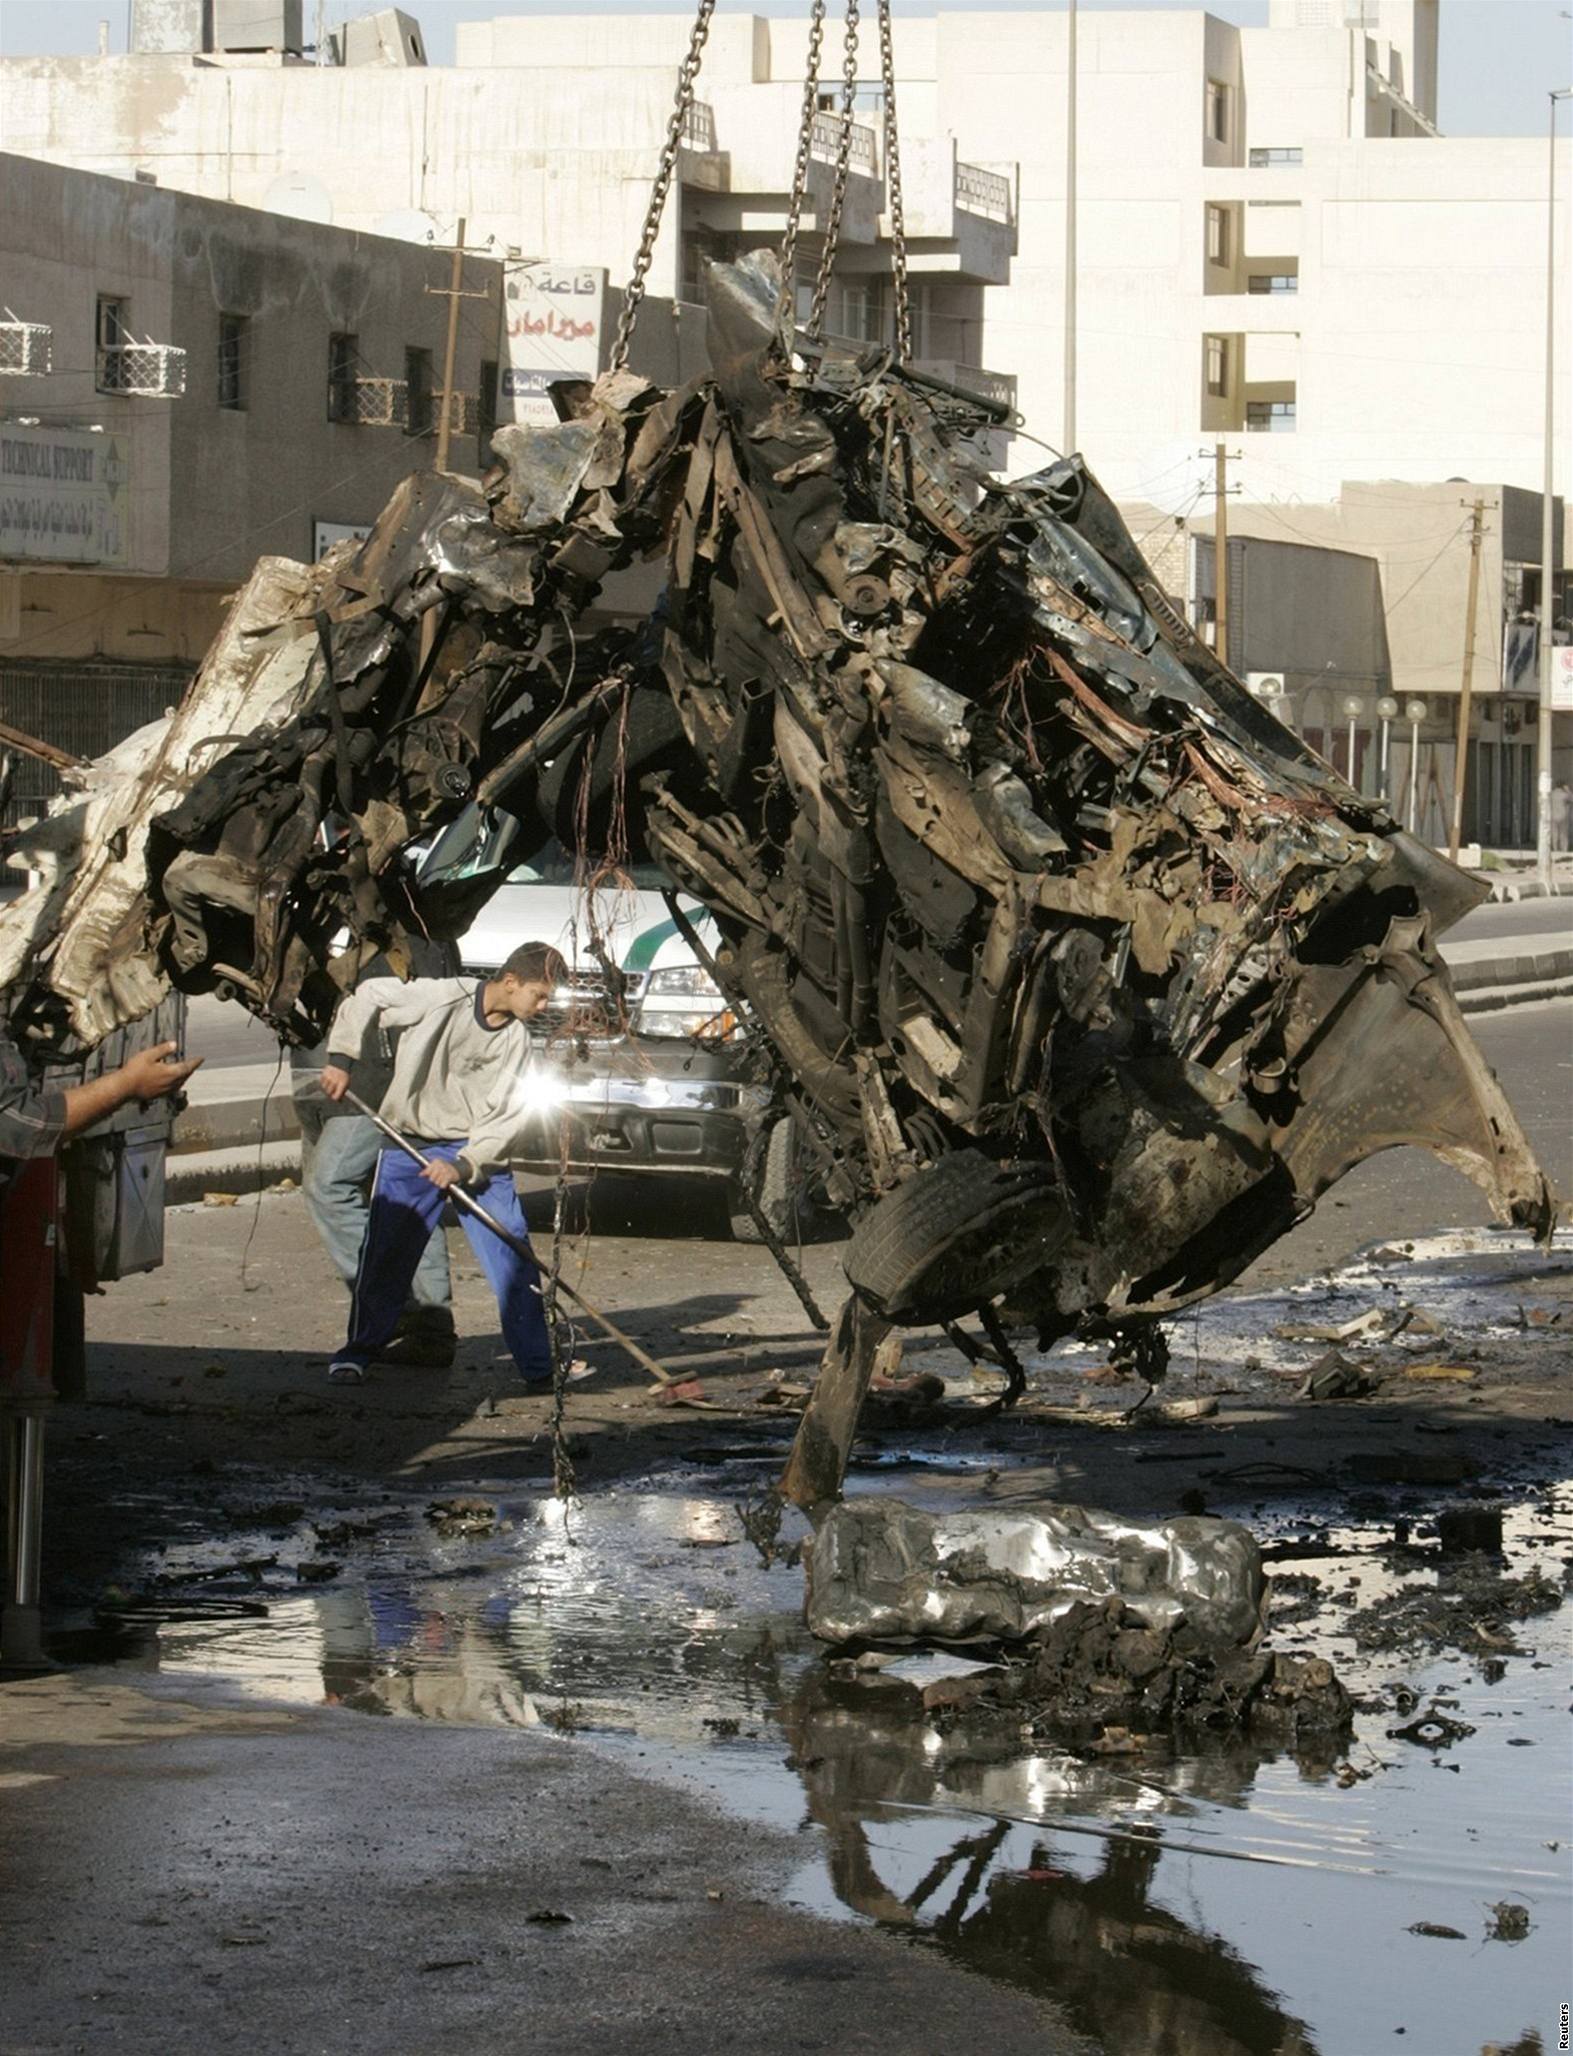 Ve východní ásti Bagdádu explodovala nálo umístná v automobilu